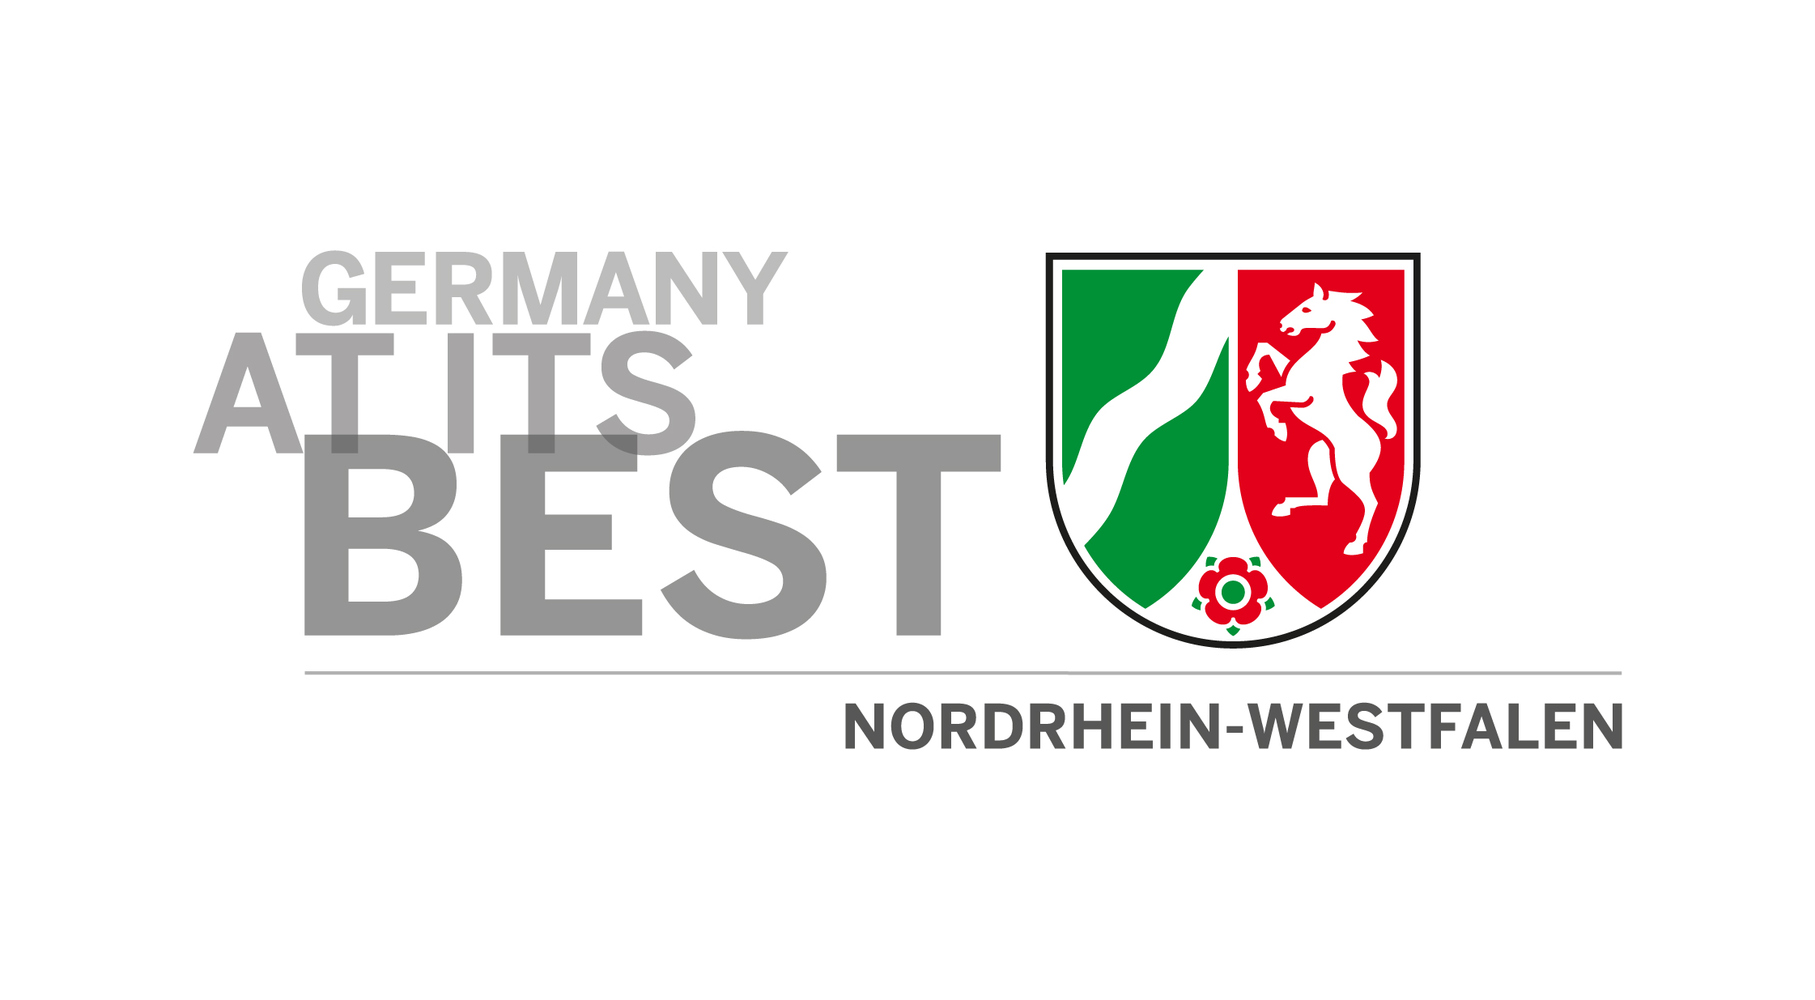 "Germany at its best: Nordrhein-Westfalen", die internationale Standortmarketingkampagne des Landes Nordrhein-Westfalen